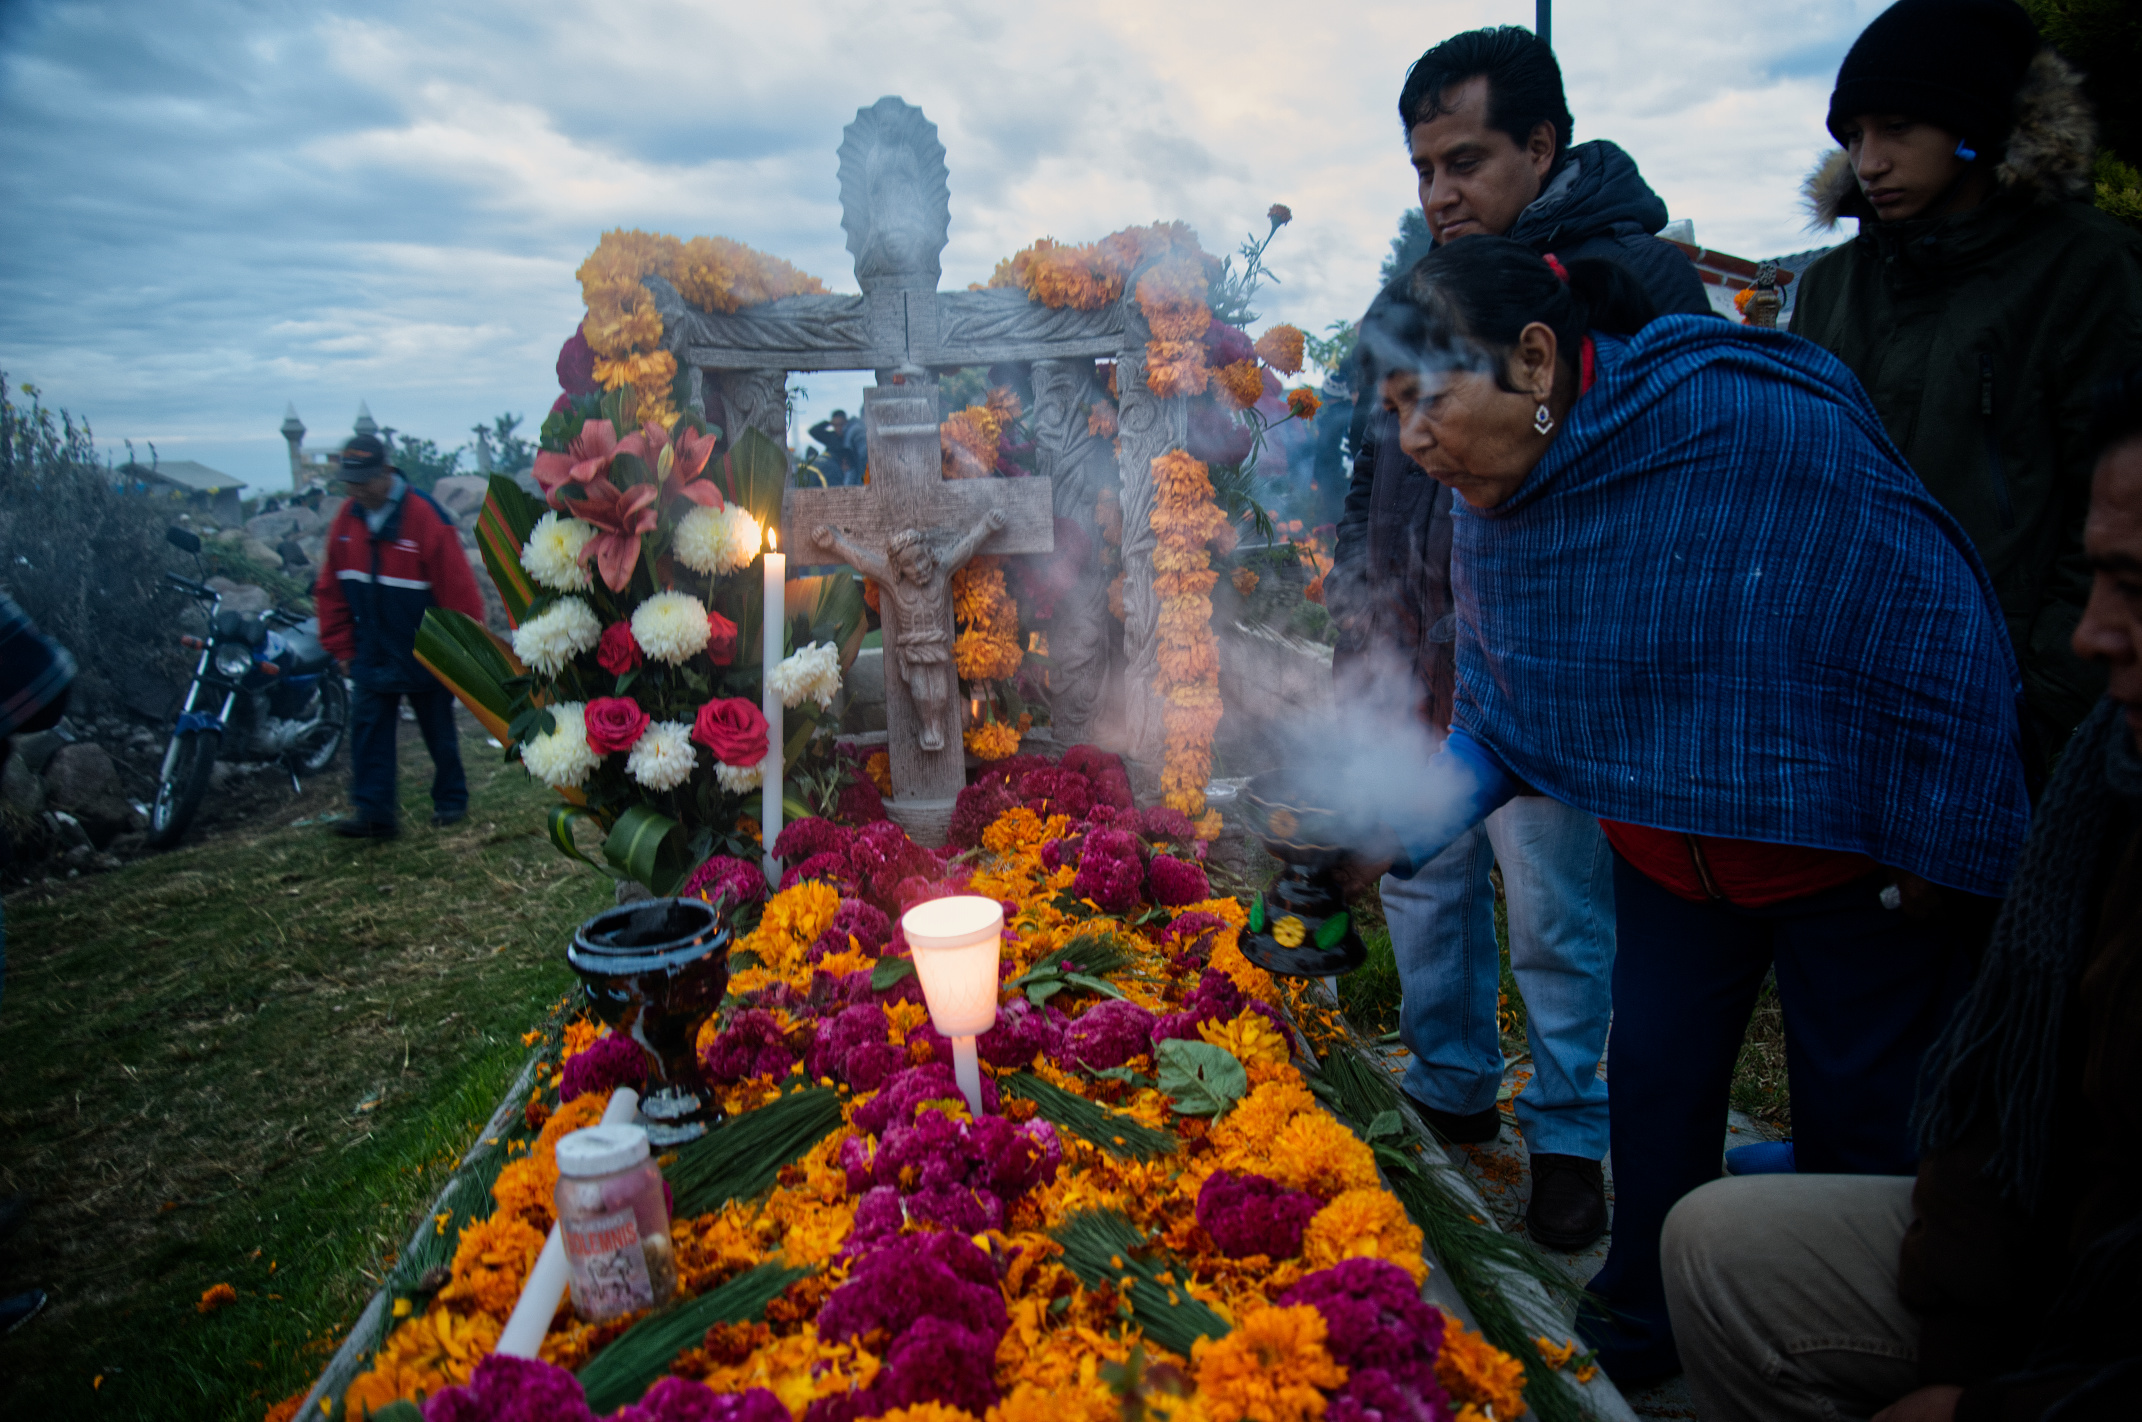 Una noche entrañable con nuestros muertos en San Pablo del Monte, Tlaxcala  - México Desconocido